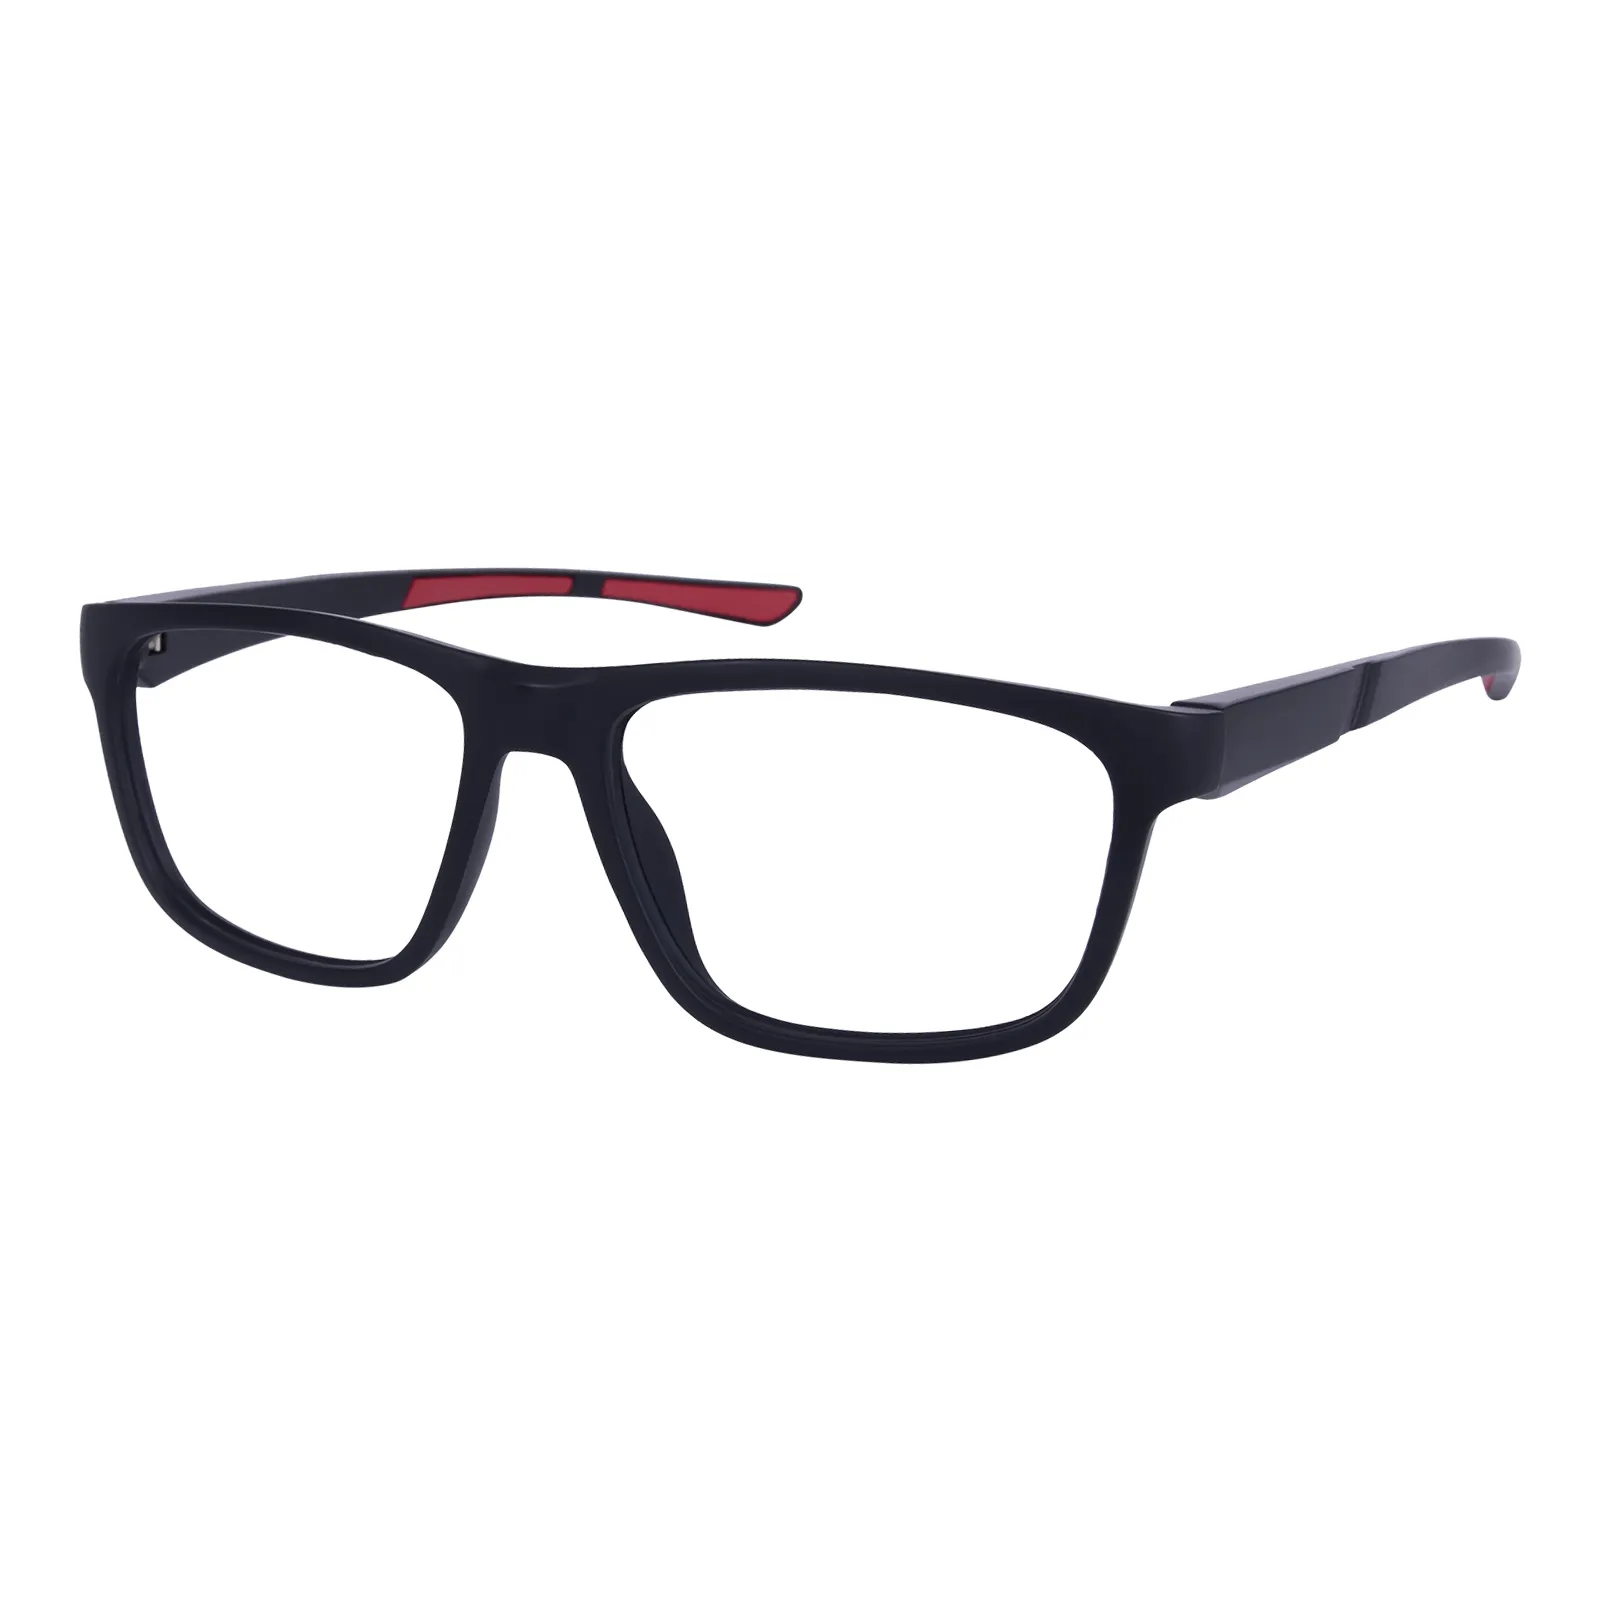 Pearson - Rectangle Black/Red Glasses for Men